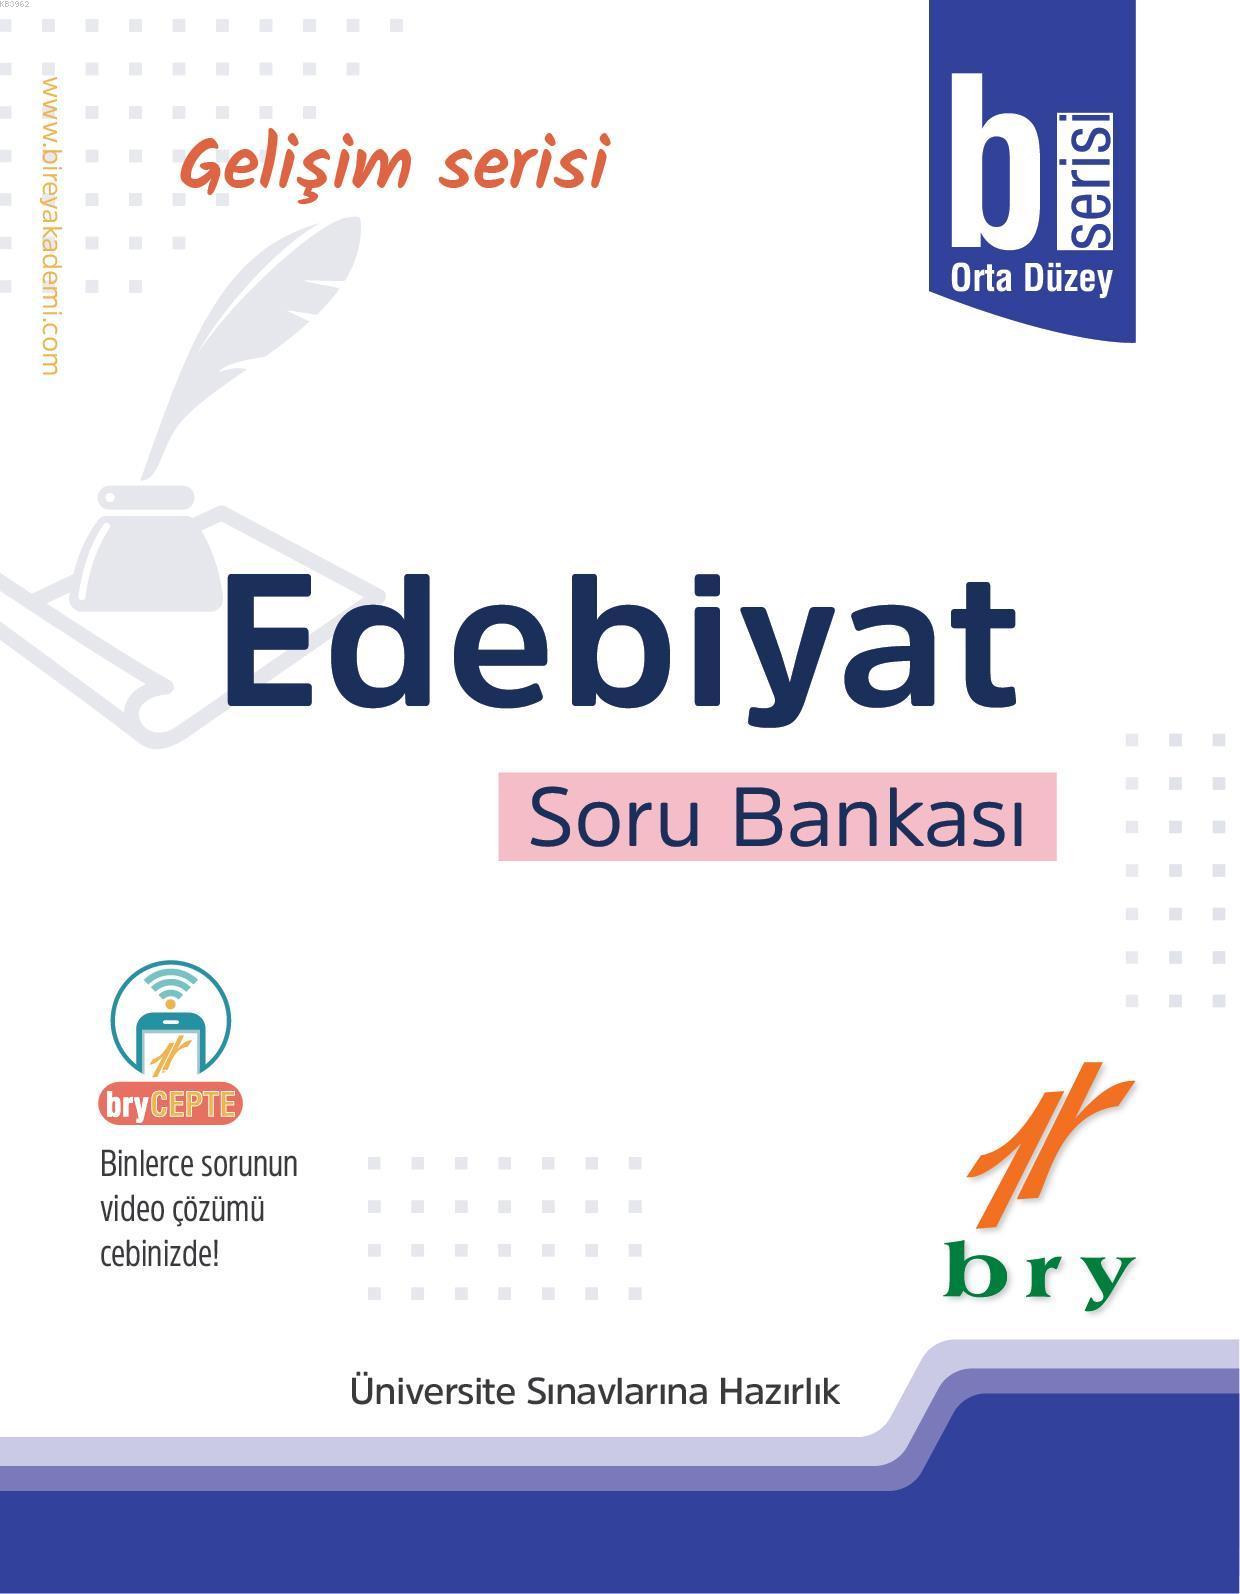 BRY Gelişim Serisi - Edebiyat Soru Bankası